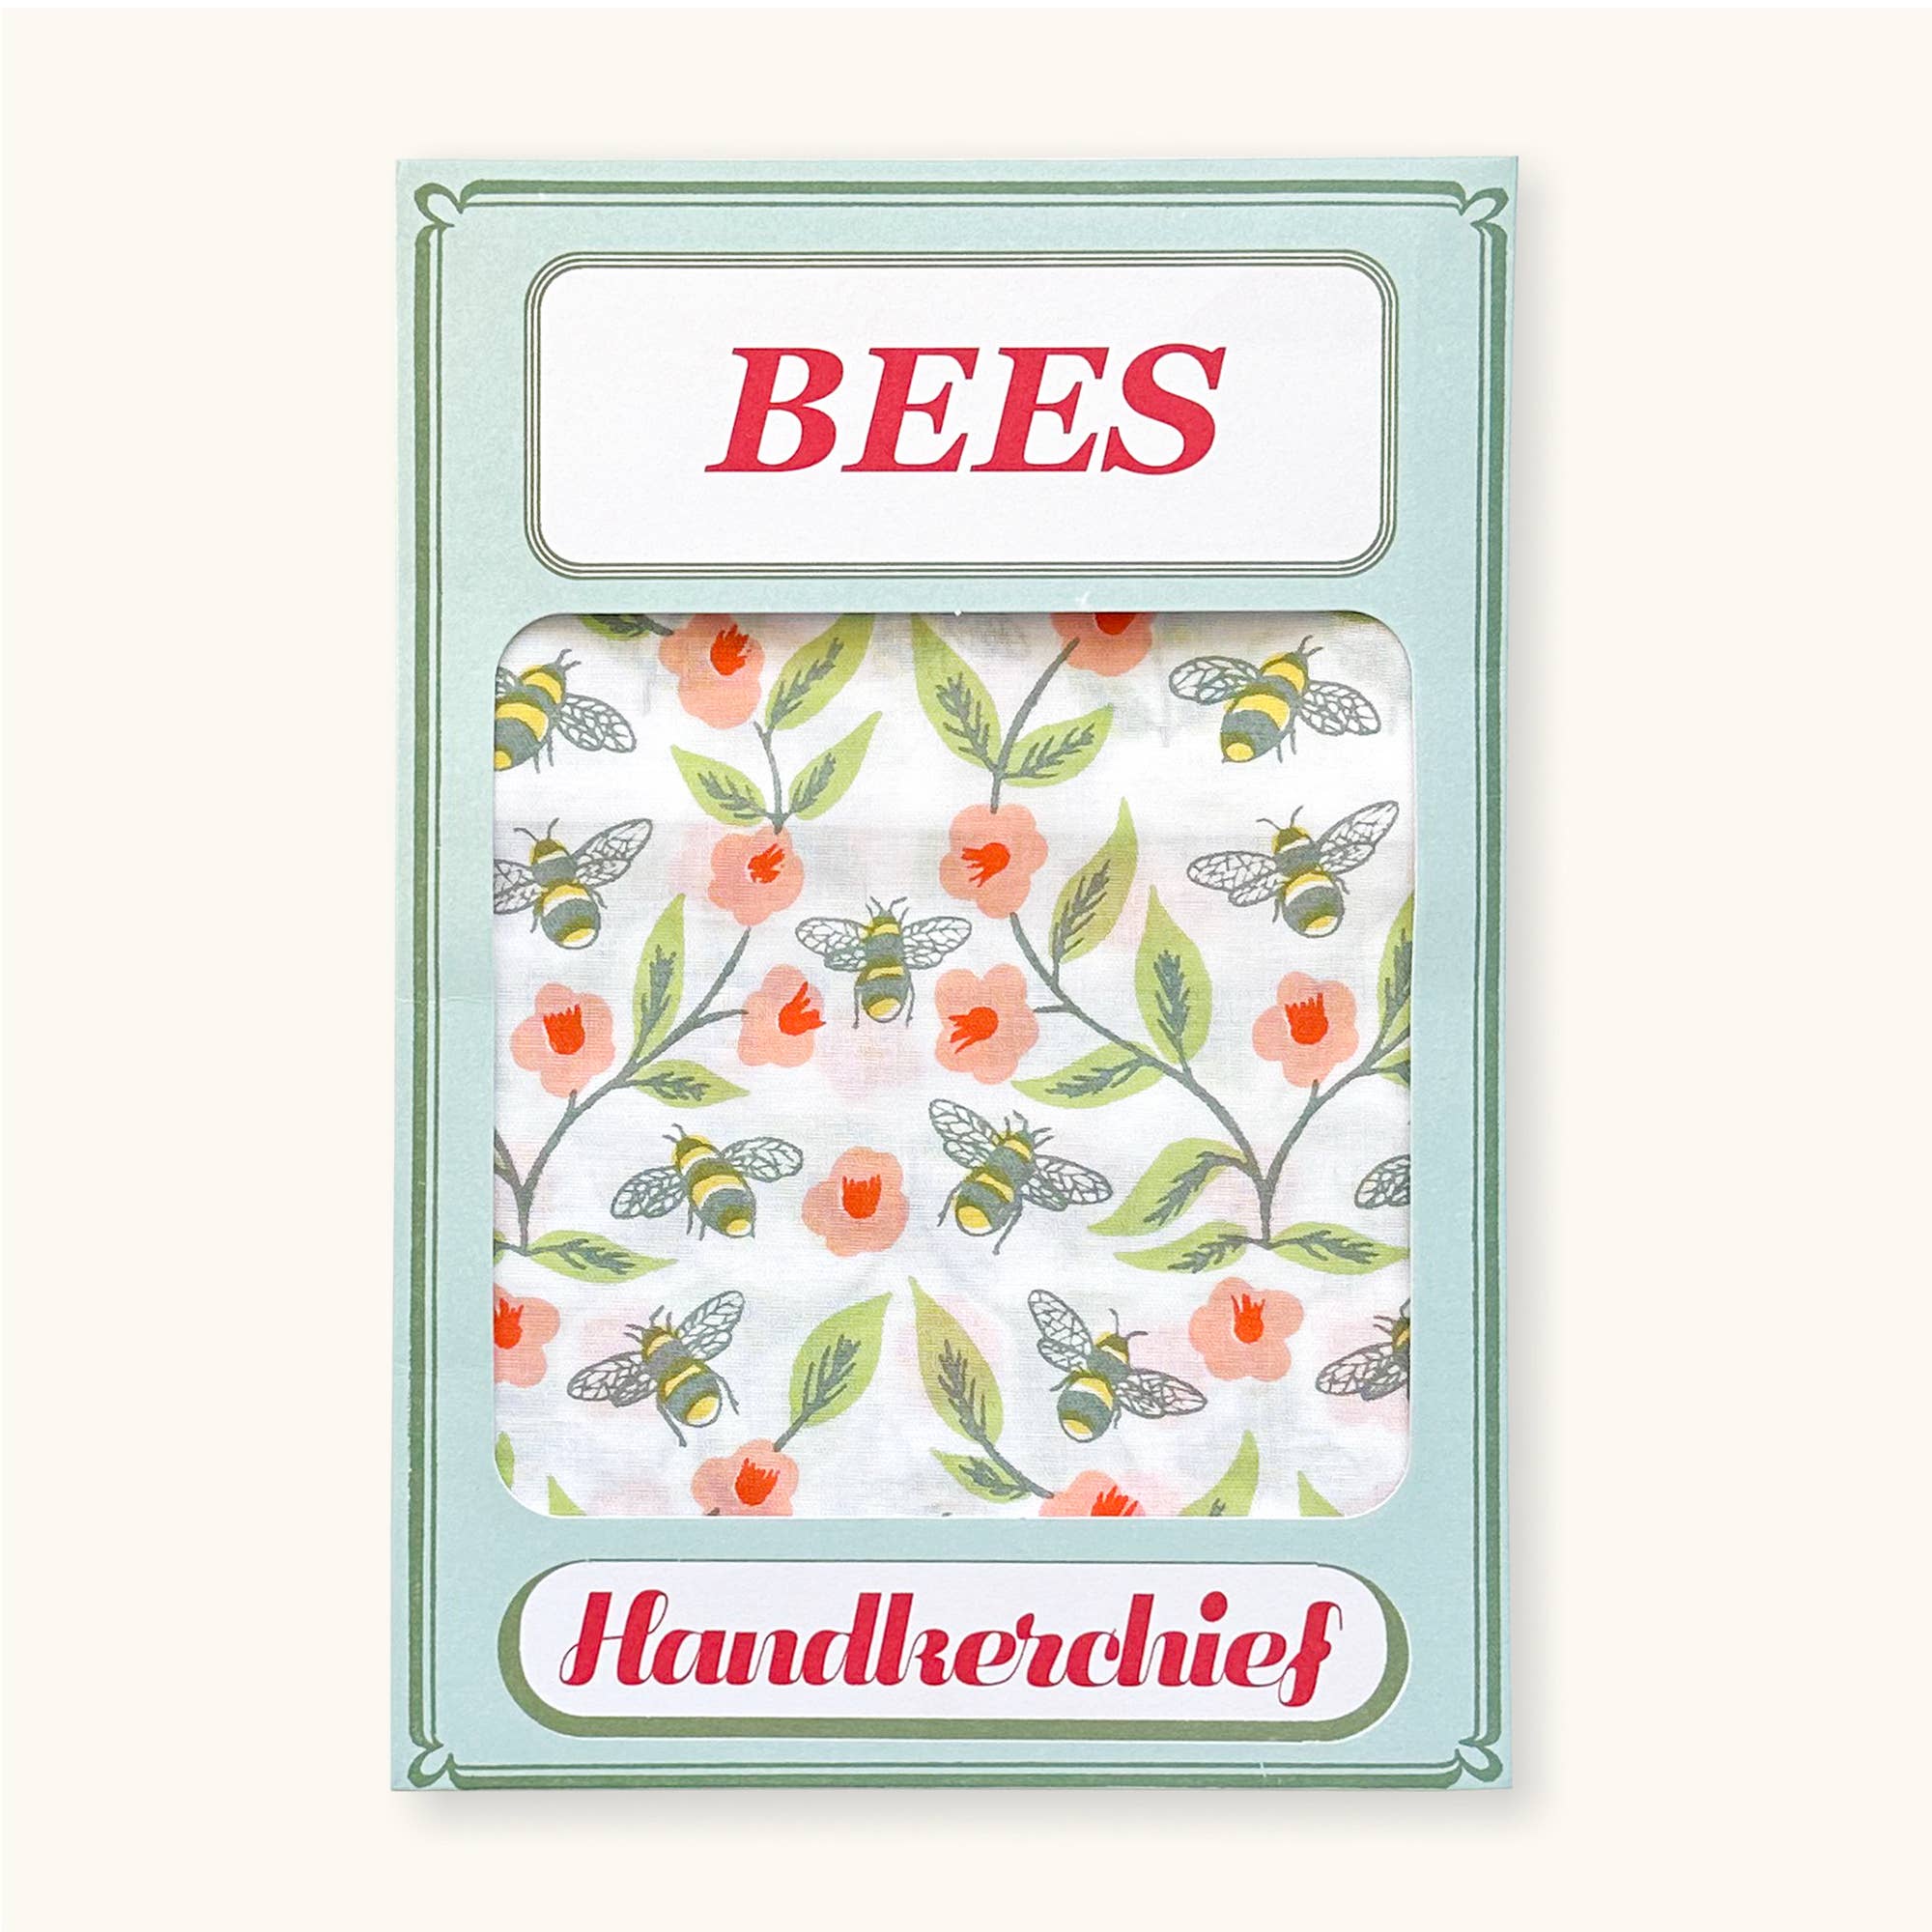 Bees Handkerchief Pocket Square Bandana